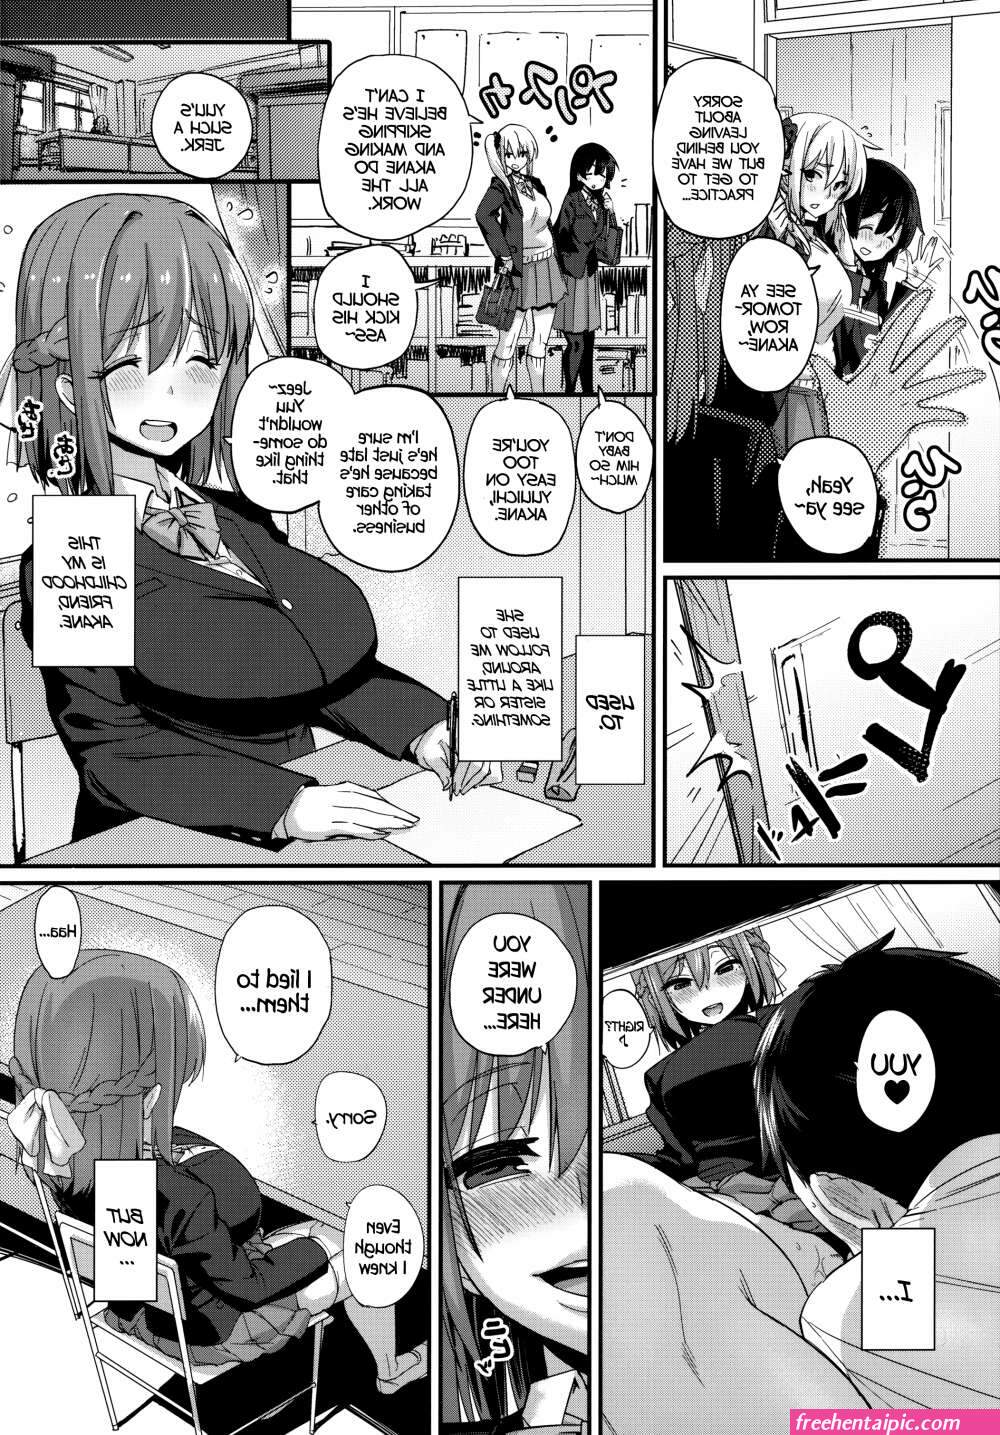 1000px x 1435px - manga hentai male pregnant - Free Hentai Pic